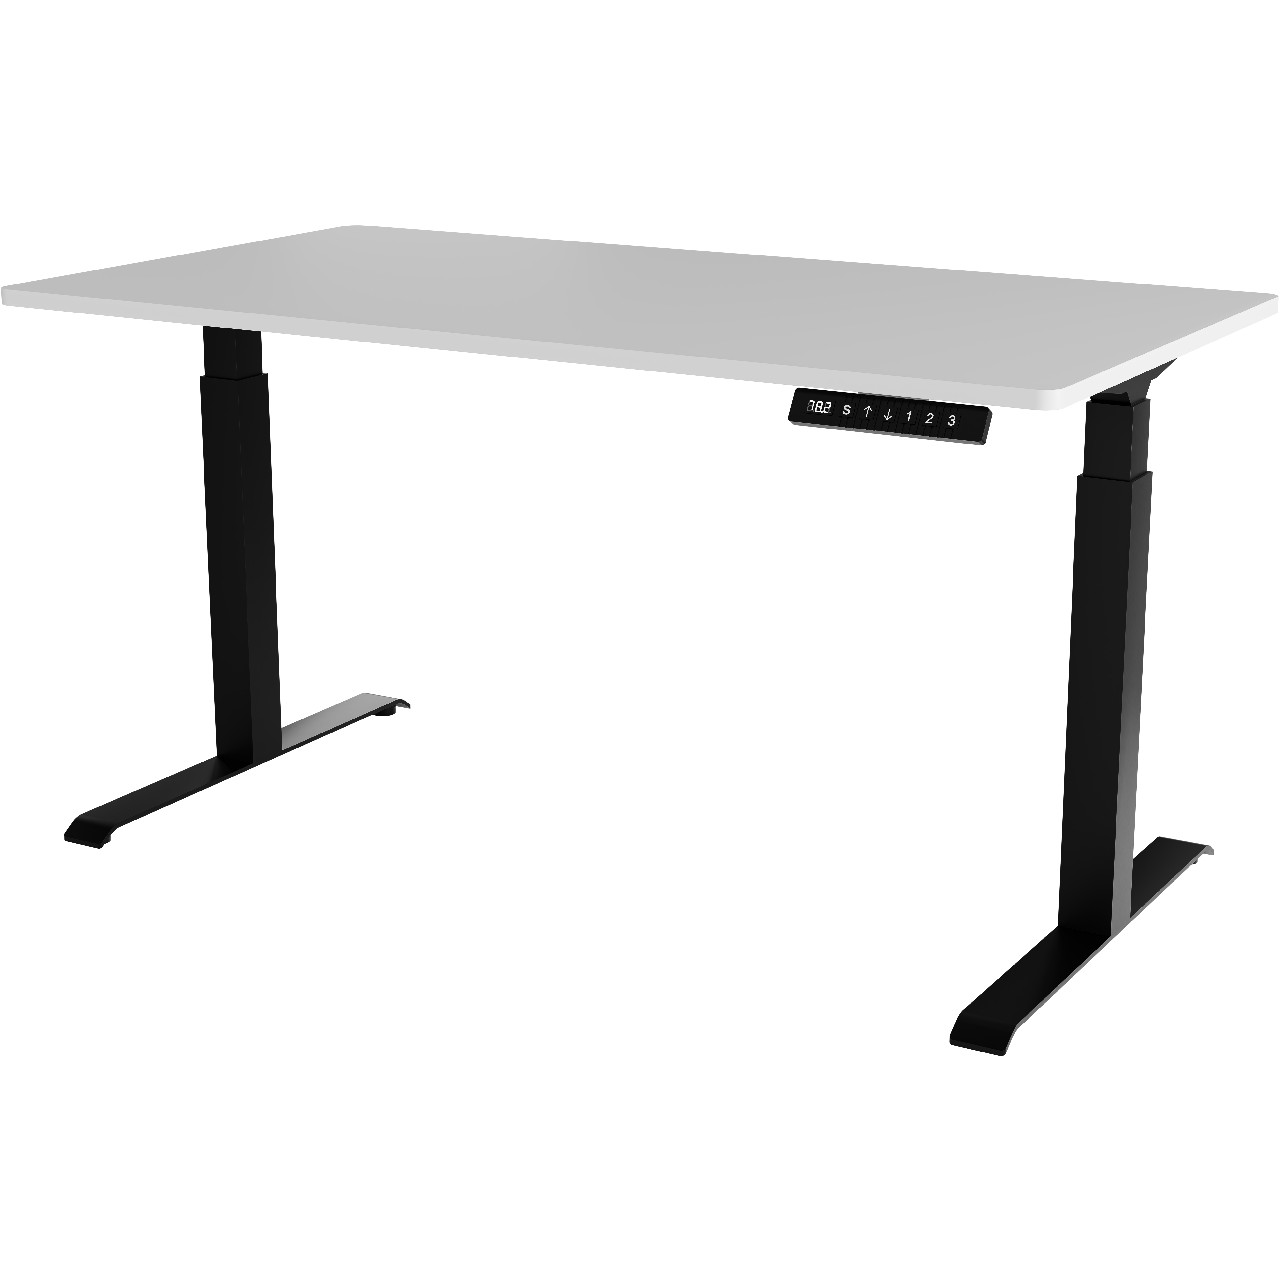 Písací stôl s nastaviteľnou výškou MOON LONG čierny / biely